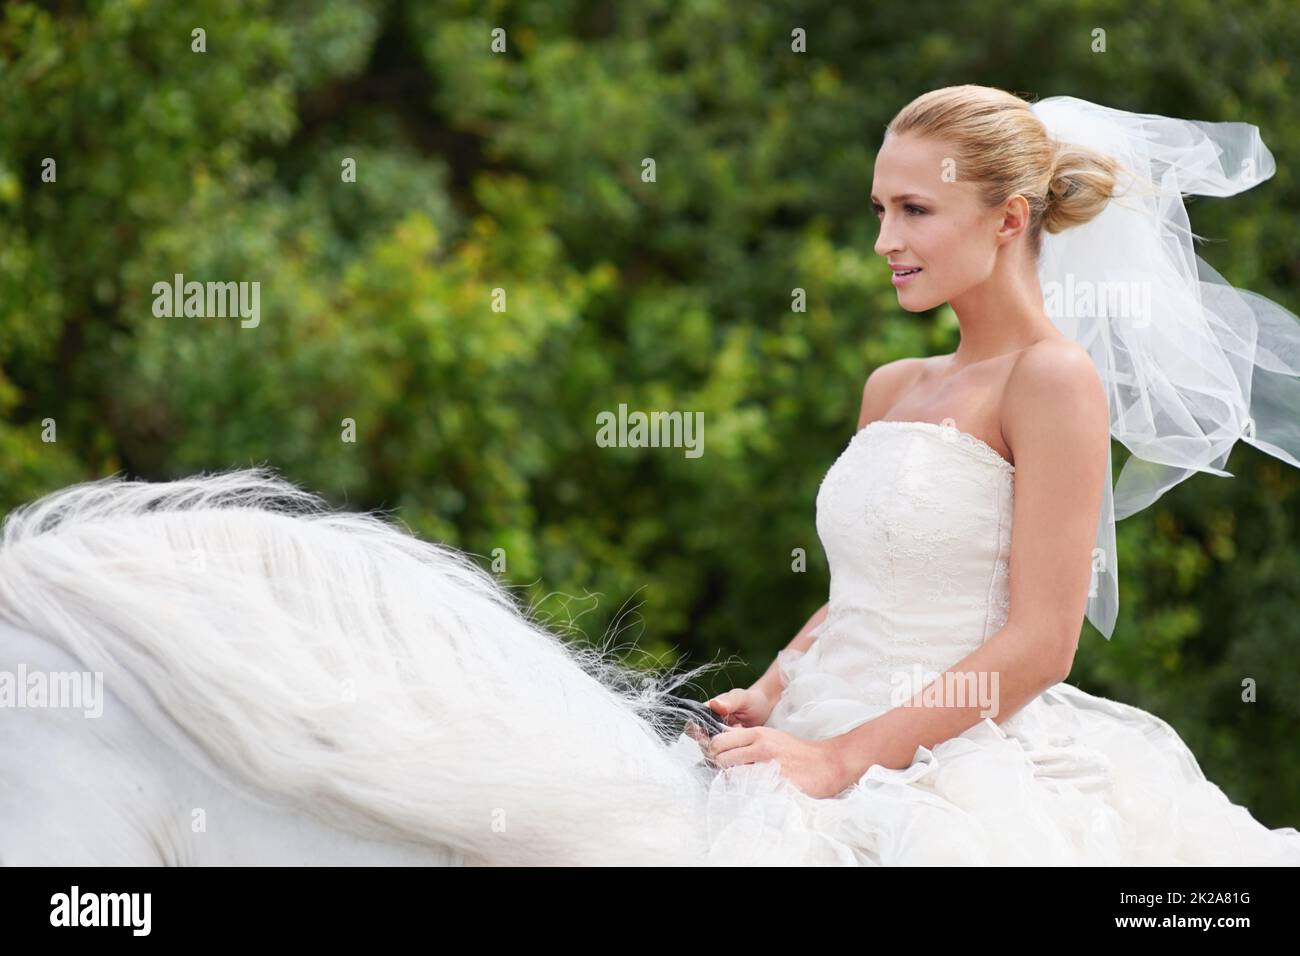 Reiten, um ihren weißen Ritter an dem besonderen Tag zu treffen. Eine wunderschöne junge Braut, die an ihrem Hochzeitstag auf einem weißen Pferd reitet. Stockfoto